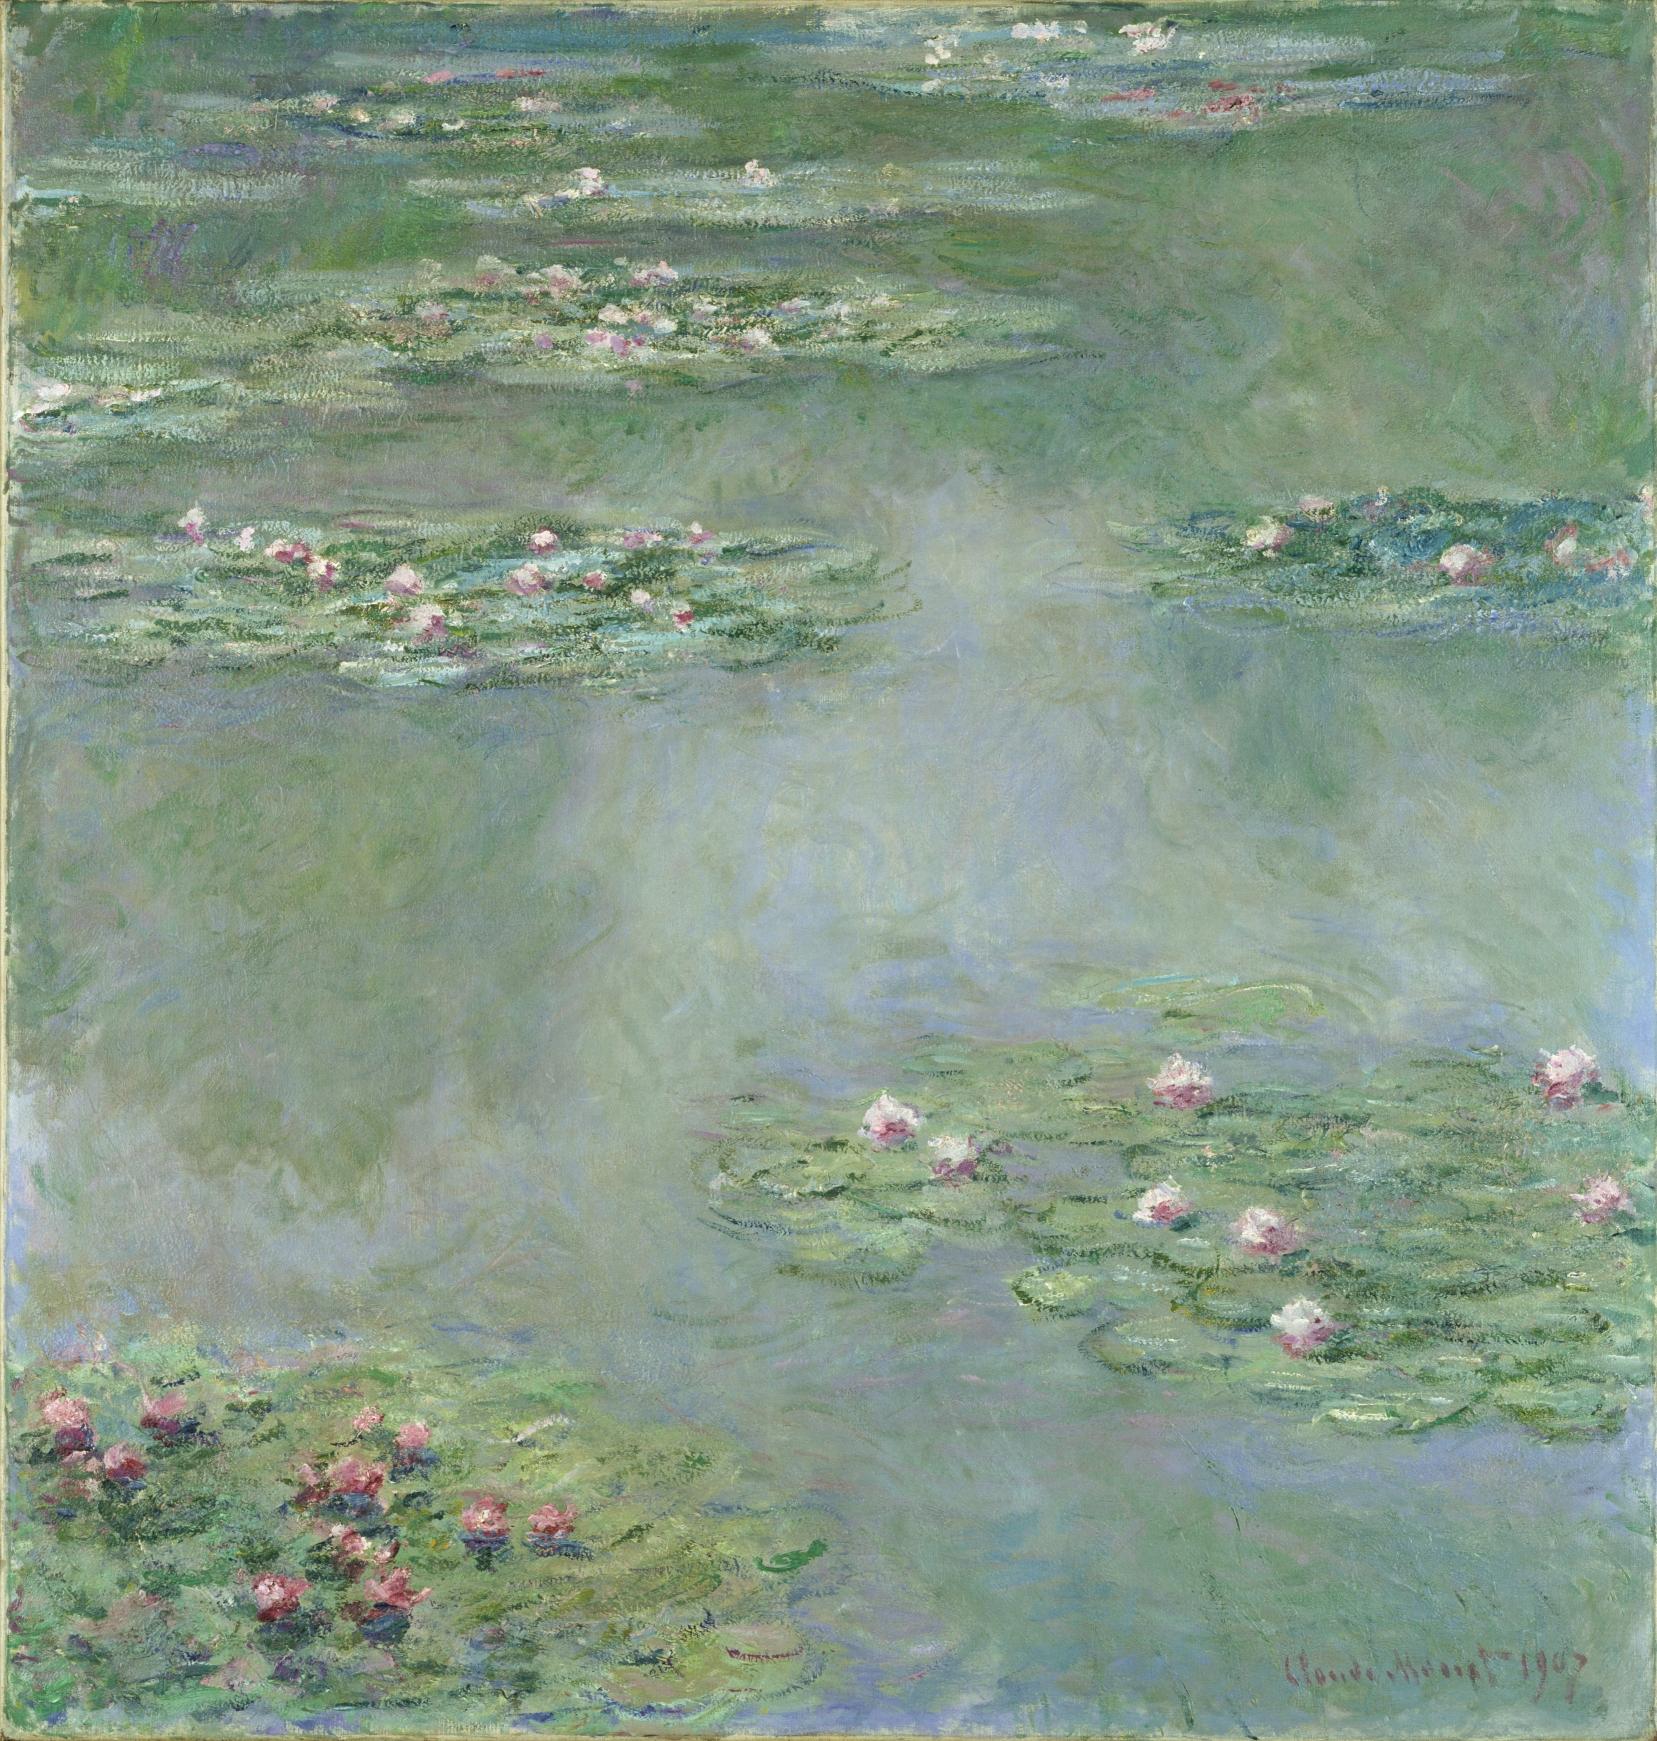 クロード・モネ《睡蓮》1907年 油彩/カンヴァス ポーラ美術館蔵。